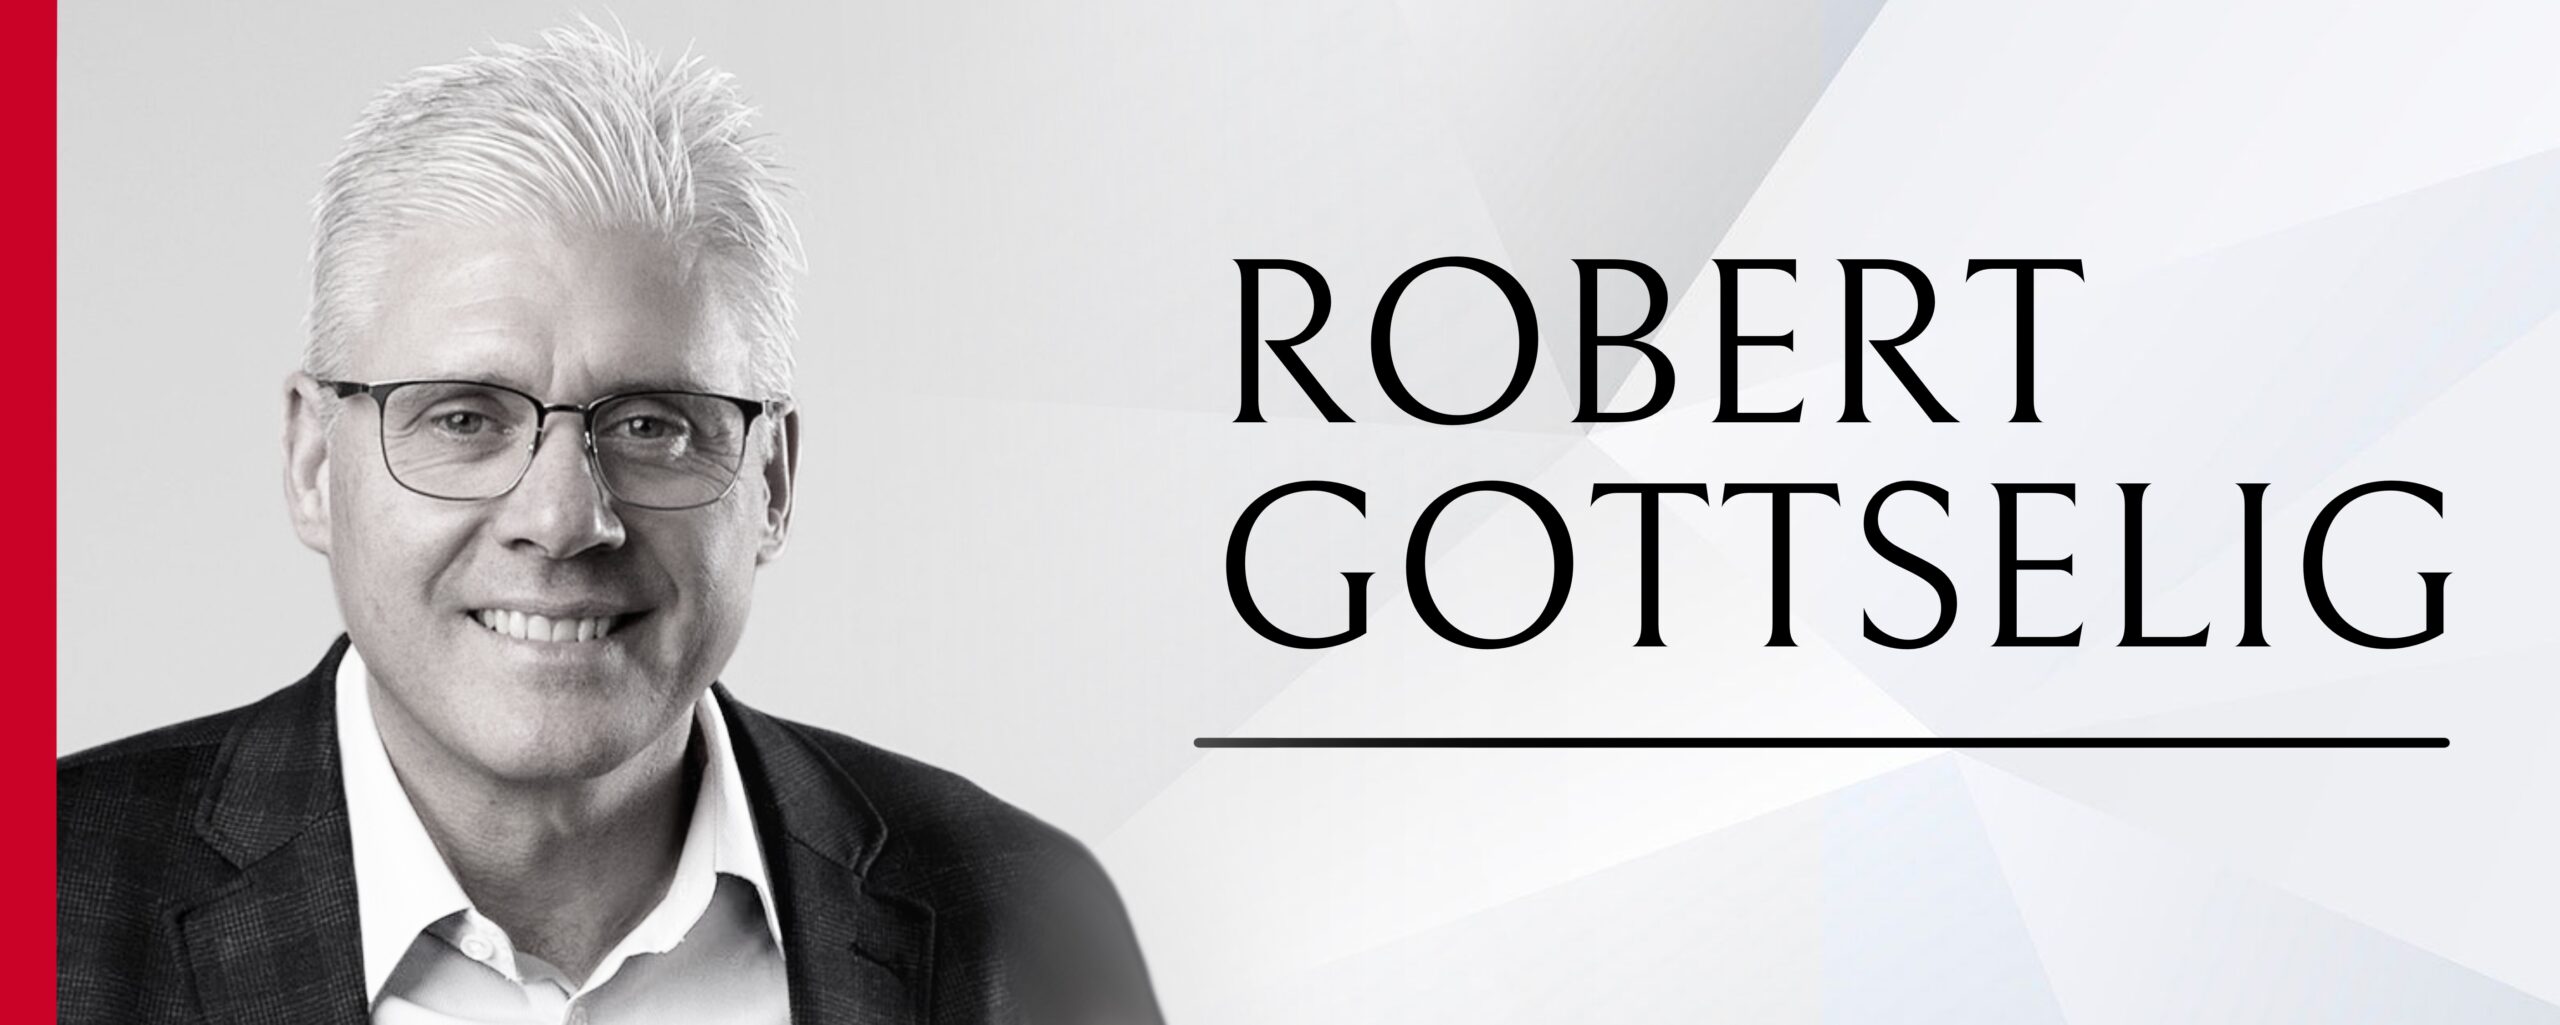 Robert Gottselig